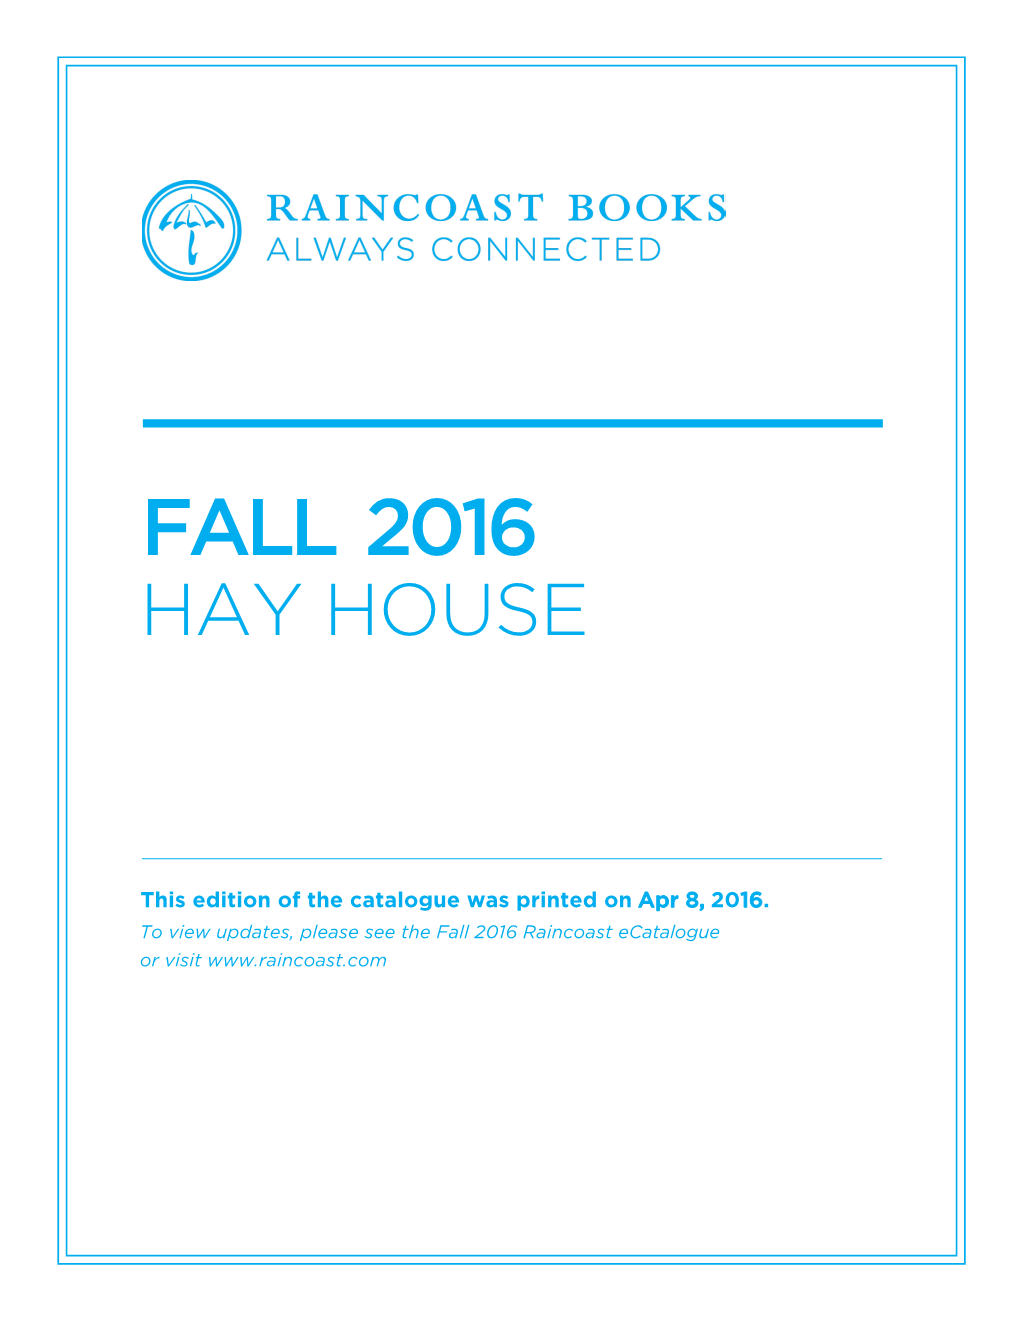 Fall 2016 Hay House